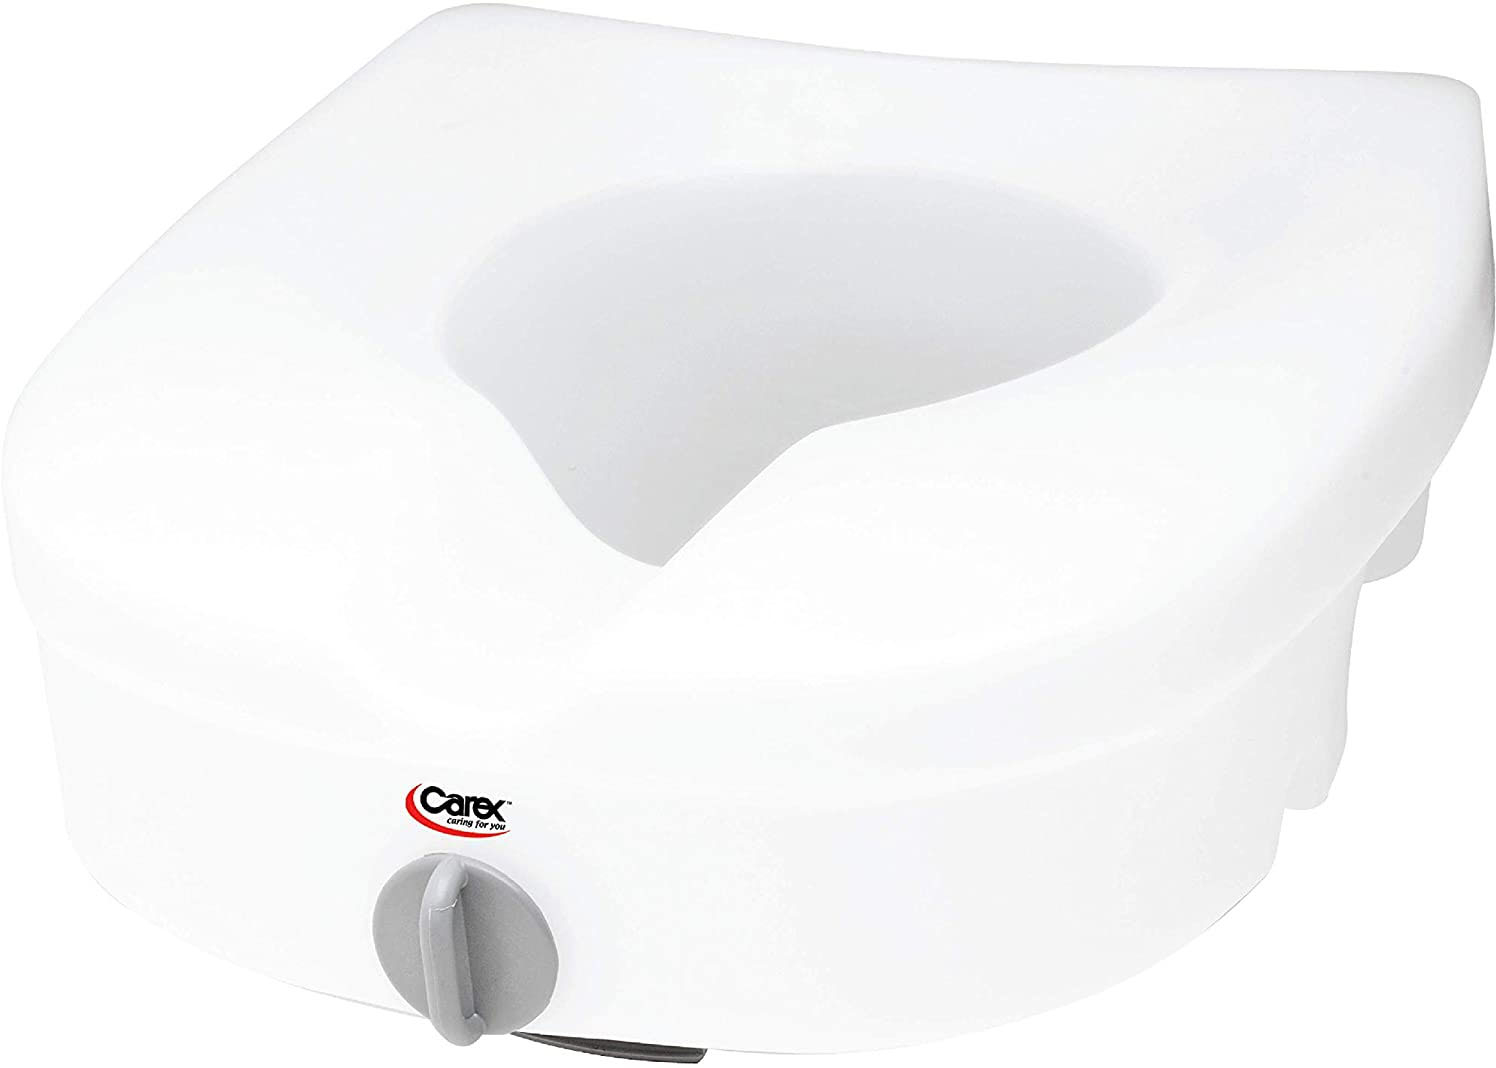 

Carex - E-Z Lock Locking Raised Toilet Seat - WHITE